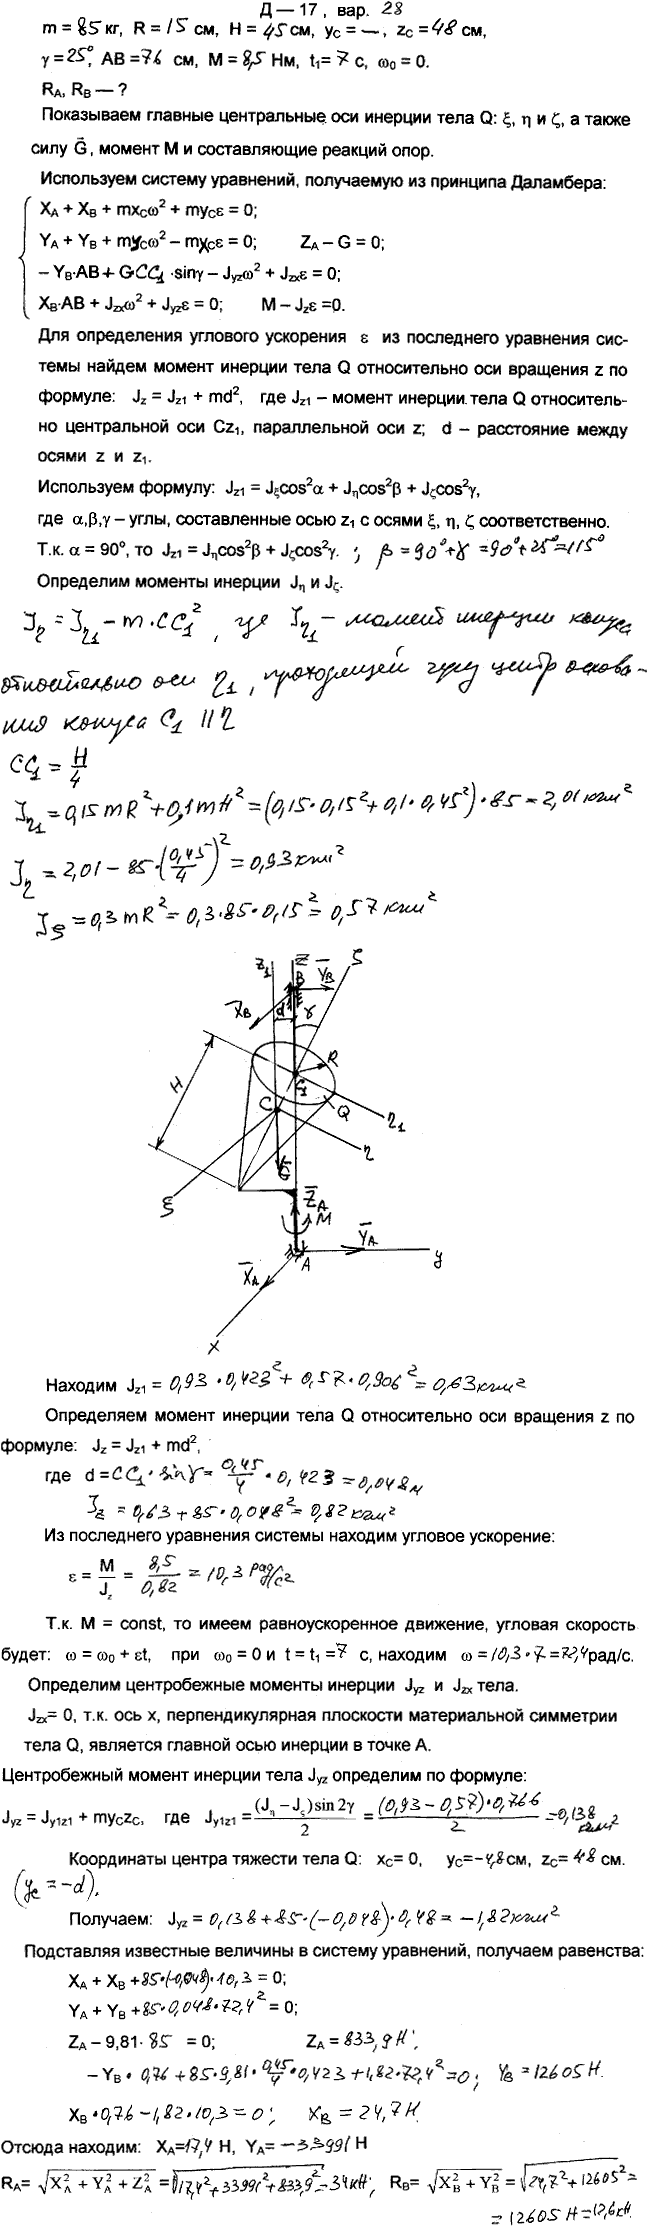 Яблонский задание Д17..., Задача 15119, Теоретическая механика